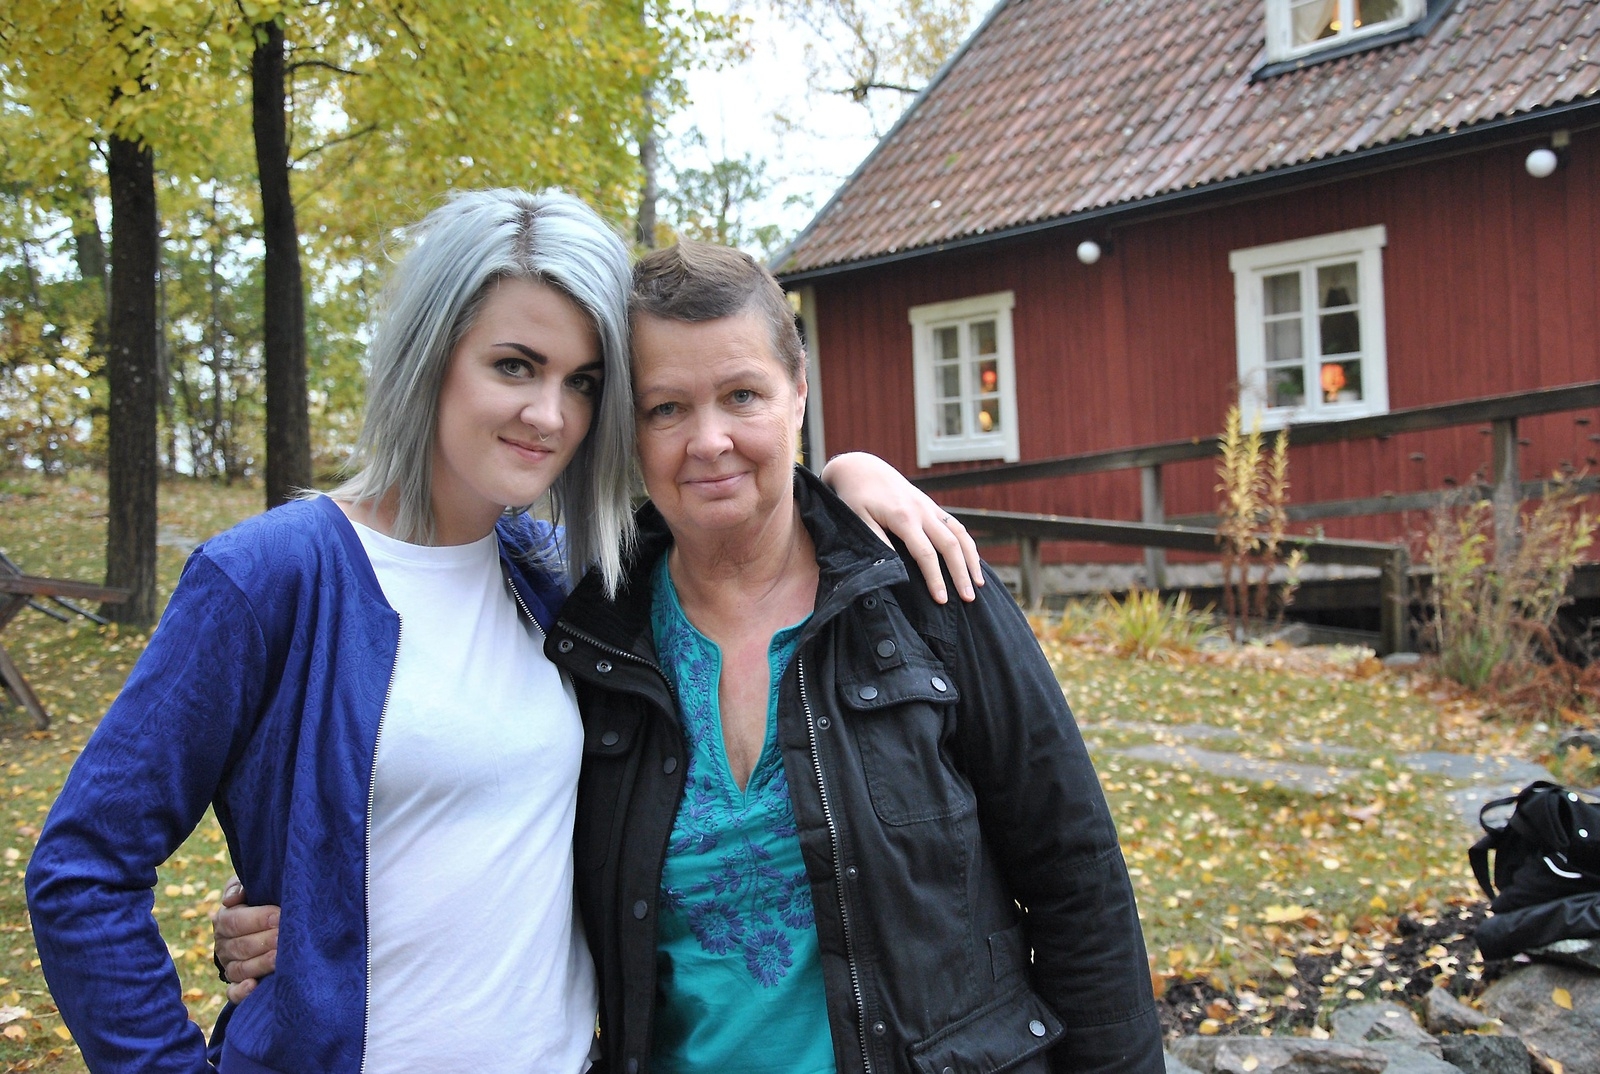 För ett år sedan fick Christel Linqvist diagnosen bröstcancer. Dottern Kajsa har varit ett stort stöd under sjukdomstiden och nu har familjen startat en insamling till förmån för Cancerfonden.
Foto: Marie Strömberg Andersson